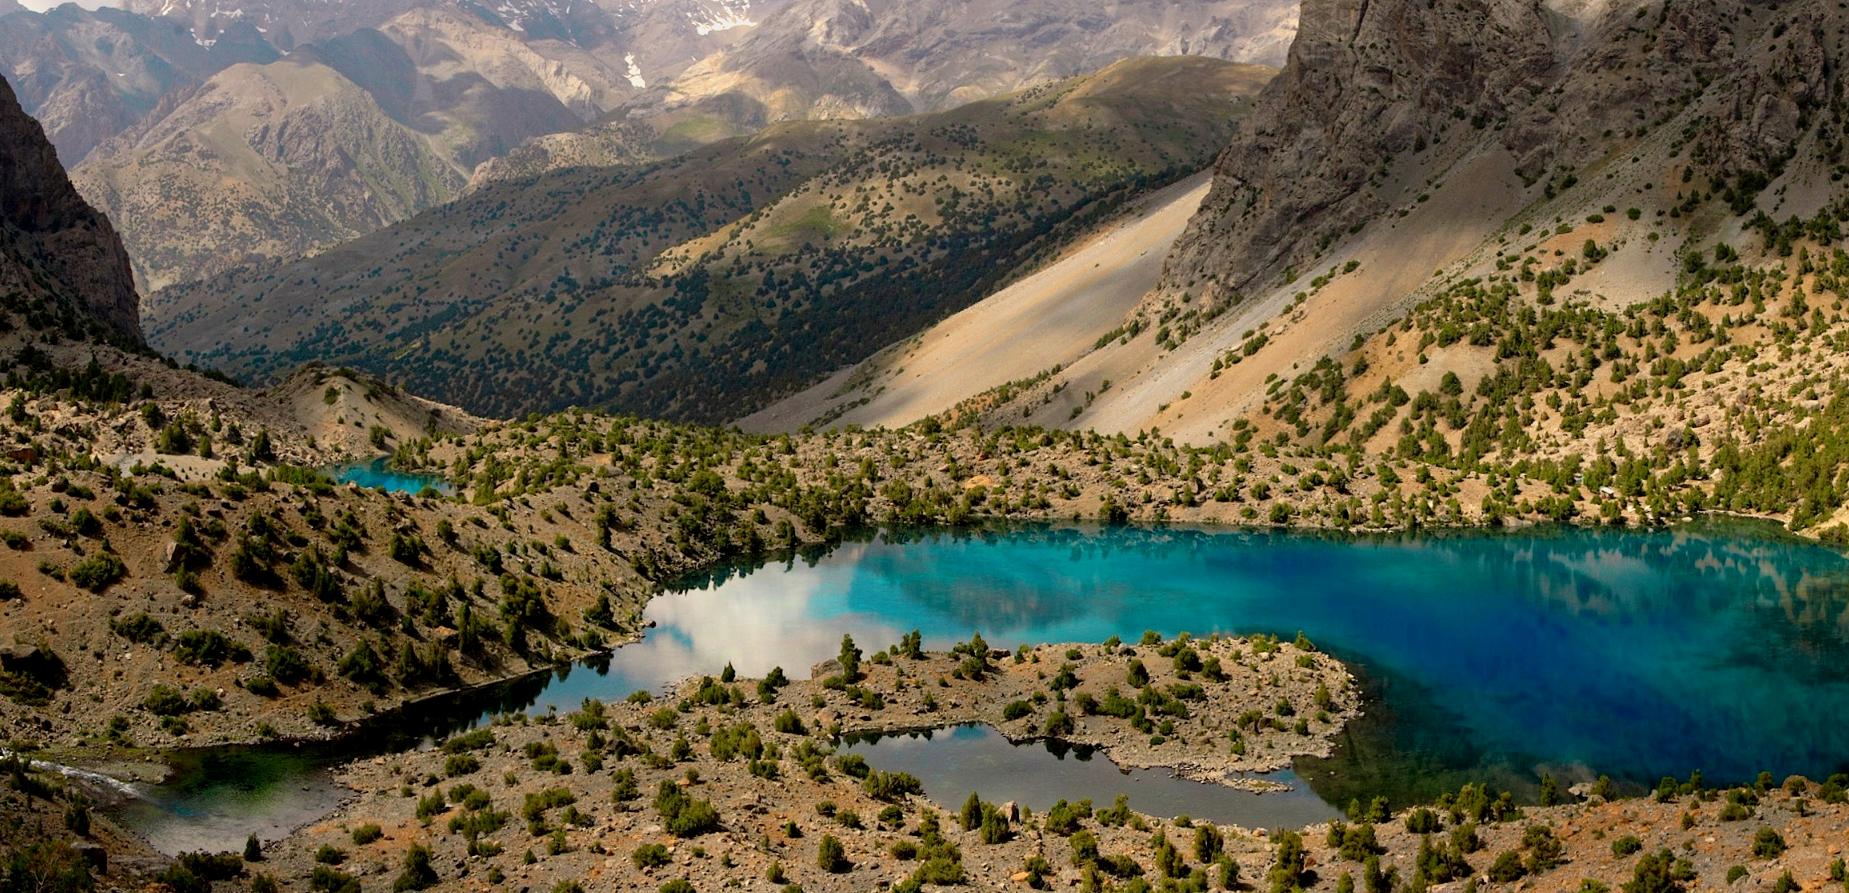 Фанские горы, Таджикистан